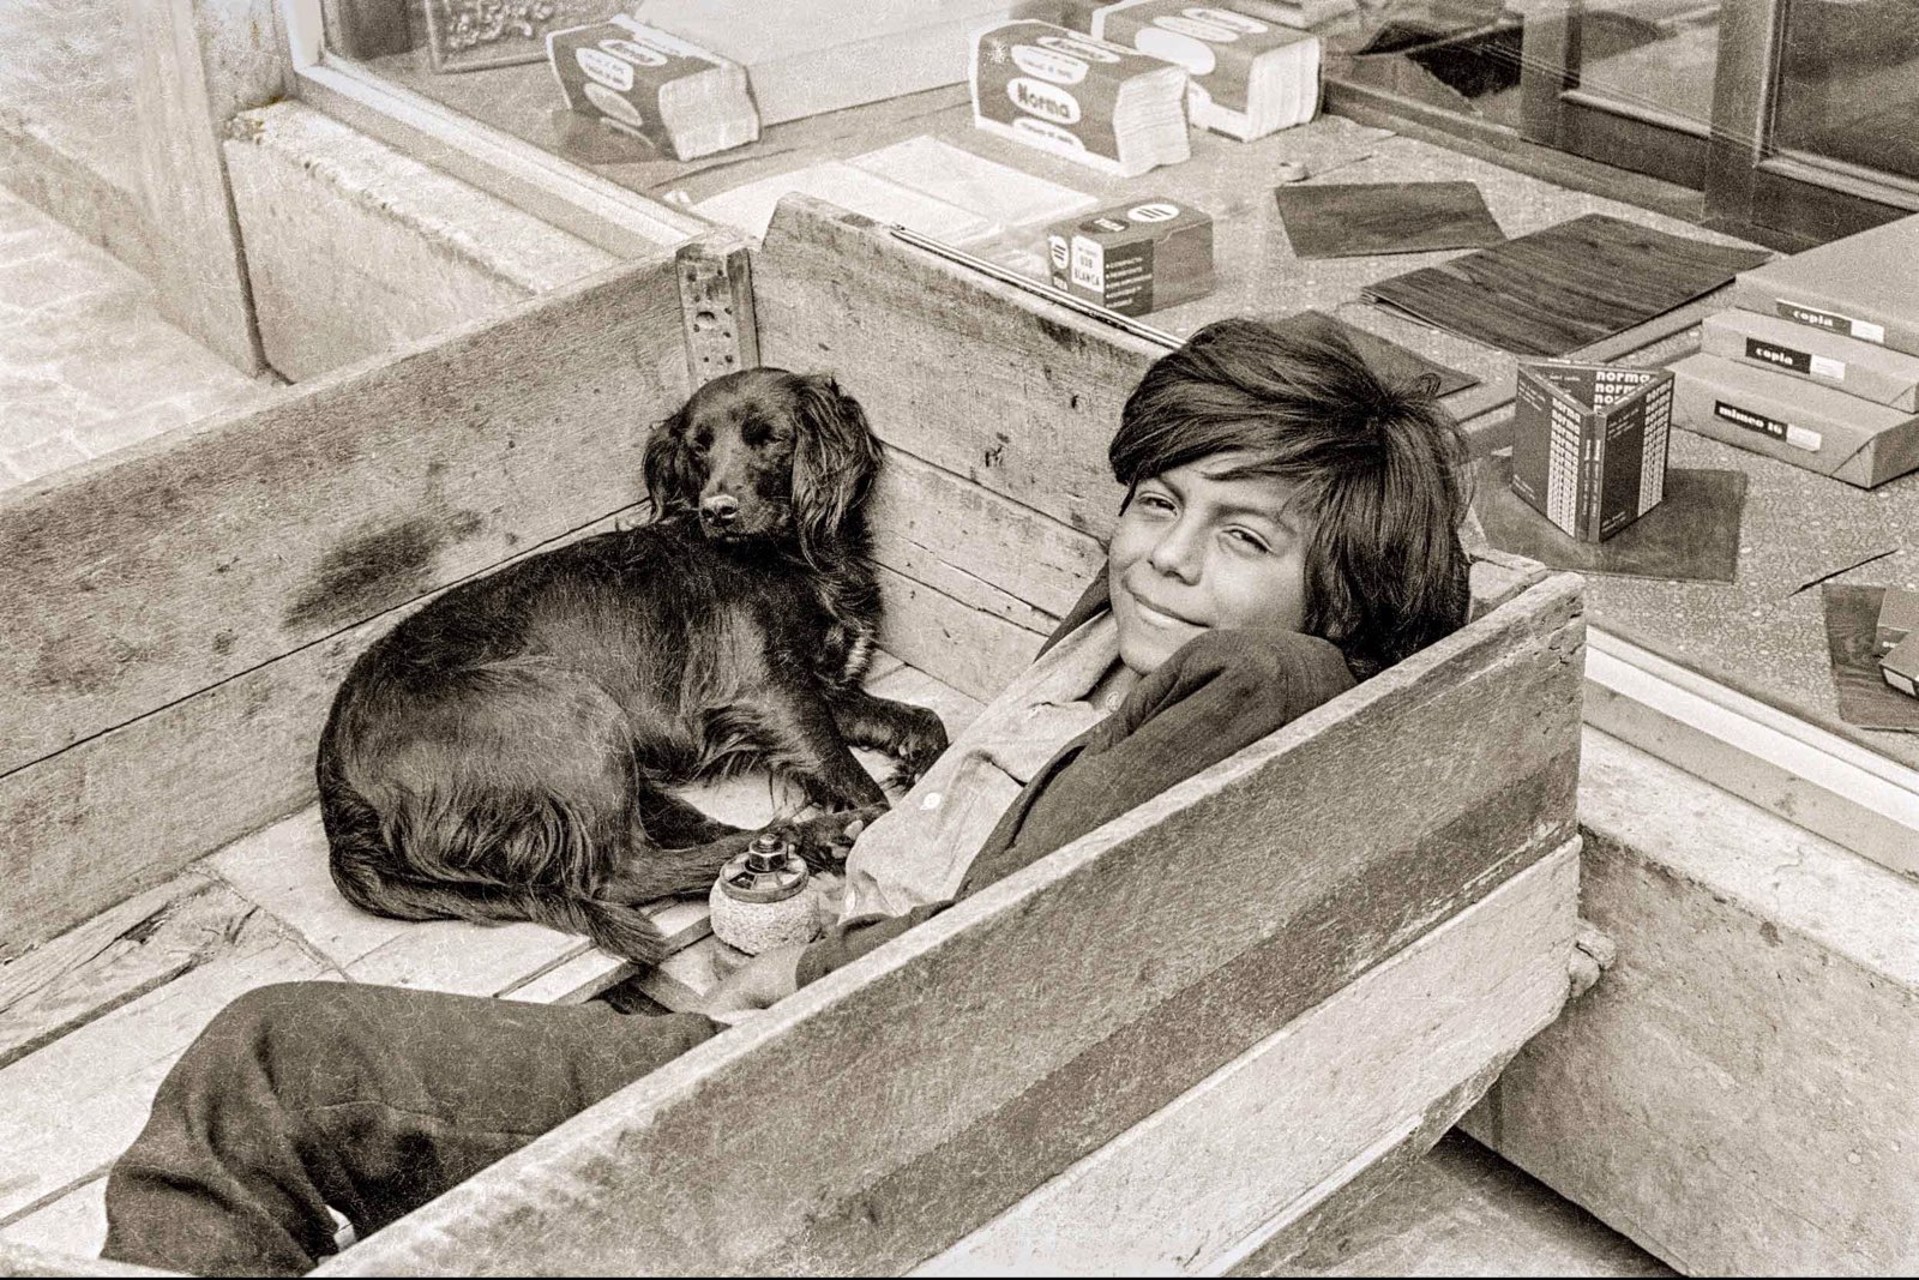 Boy Dog Box, Unframed (121) by Jack Dempsey